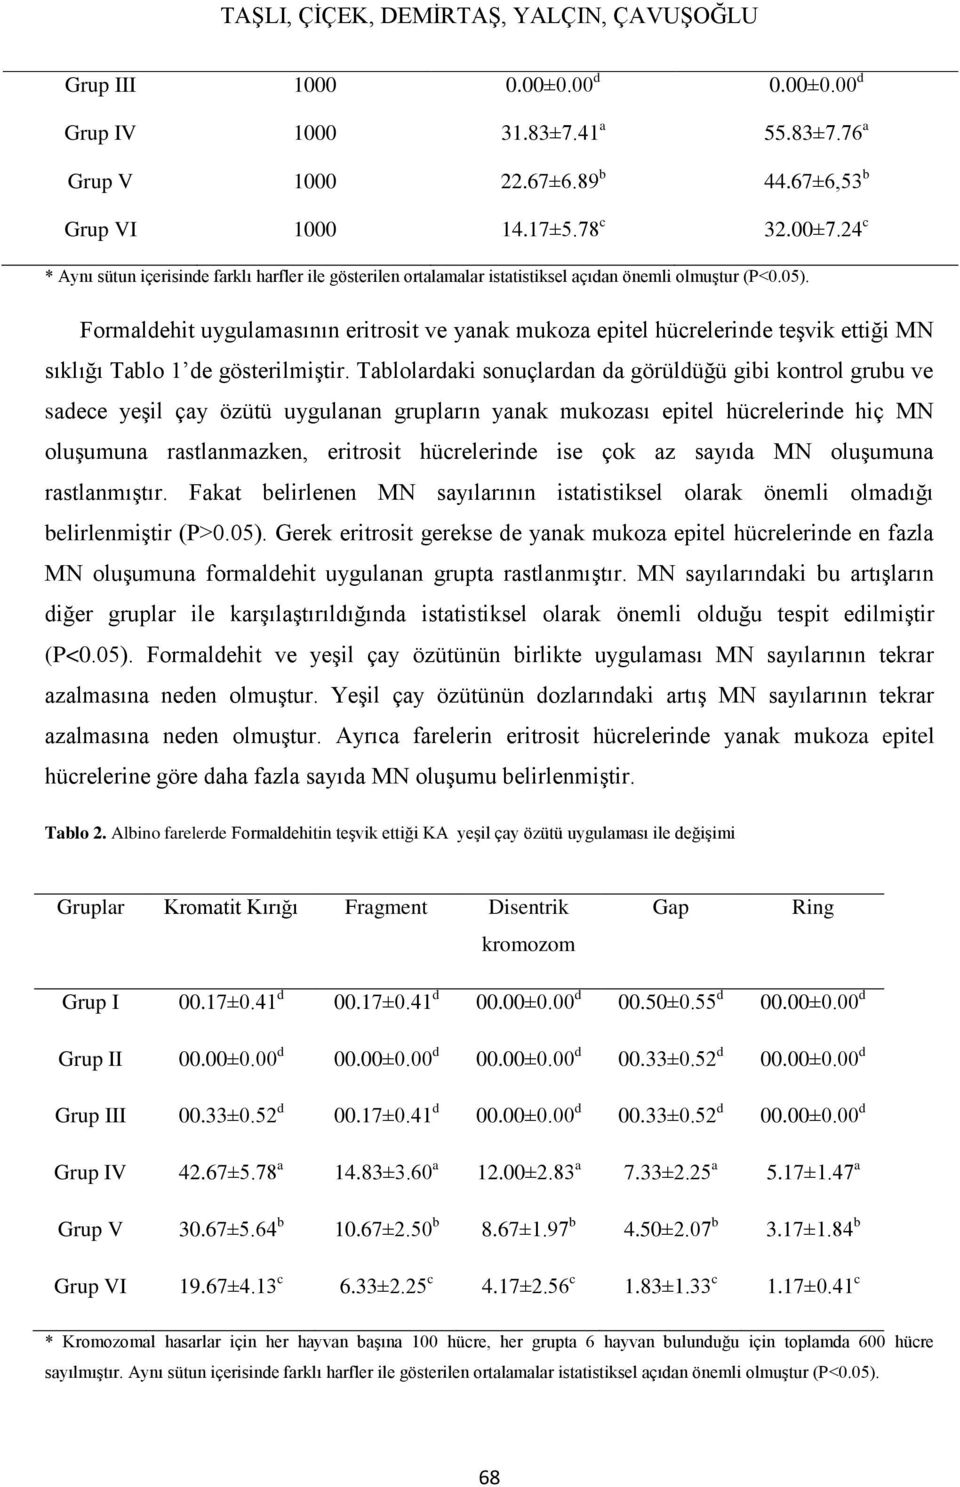 Formaldehit uygulamasının eritrosit ve yanak mukoza epitel hücrelerinde teşvik ettiği MN sıklığı Tablo 1 de gösterilmiştir.